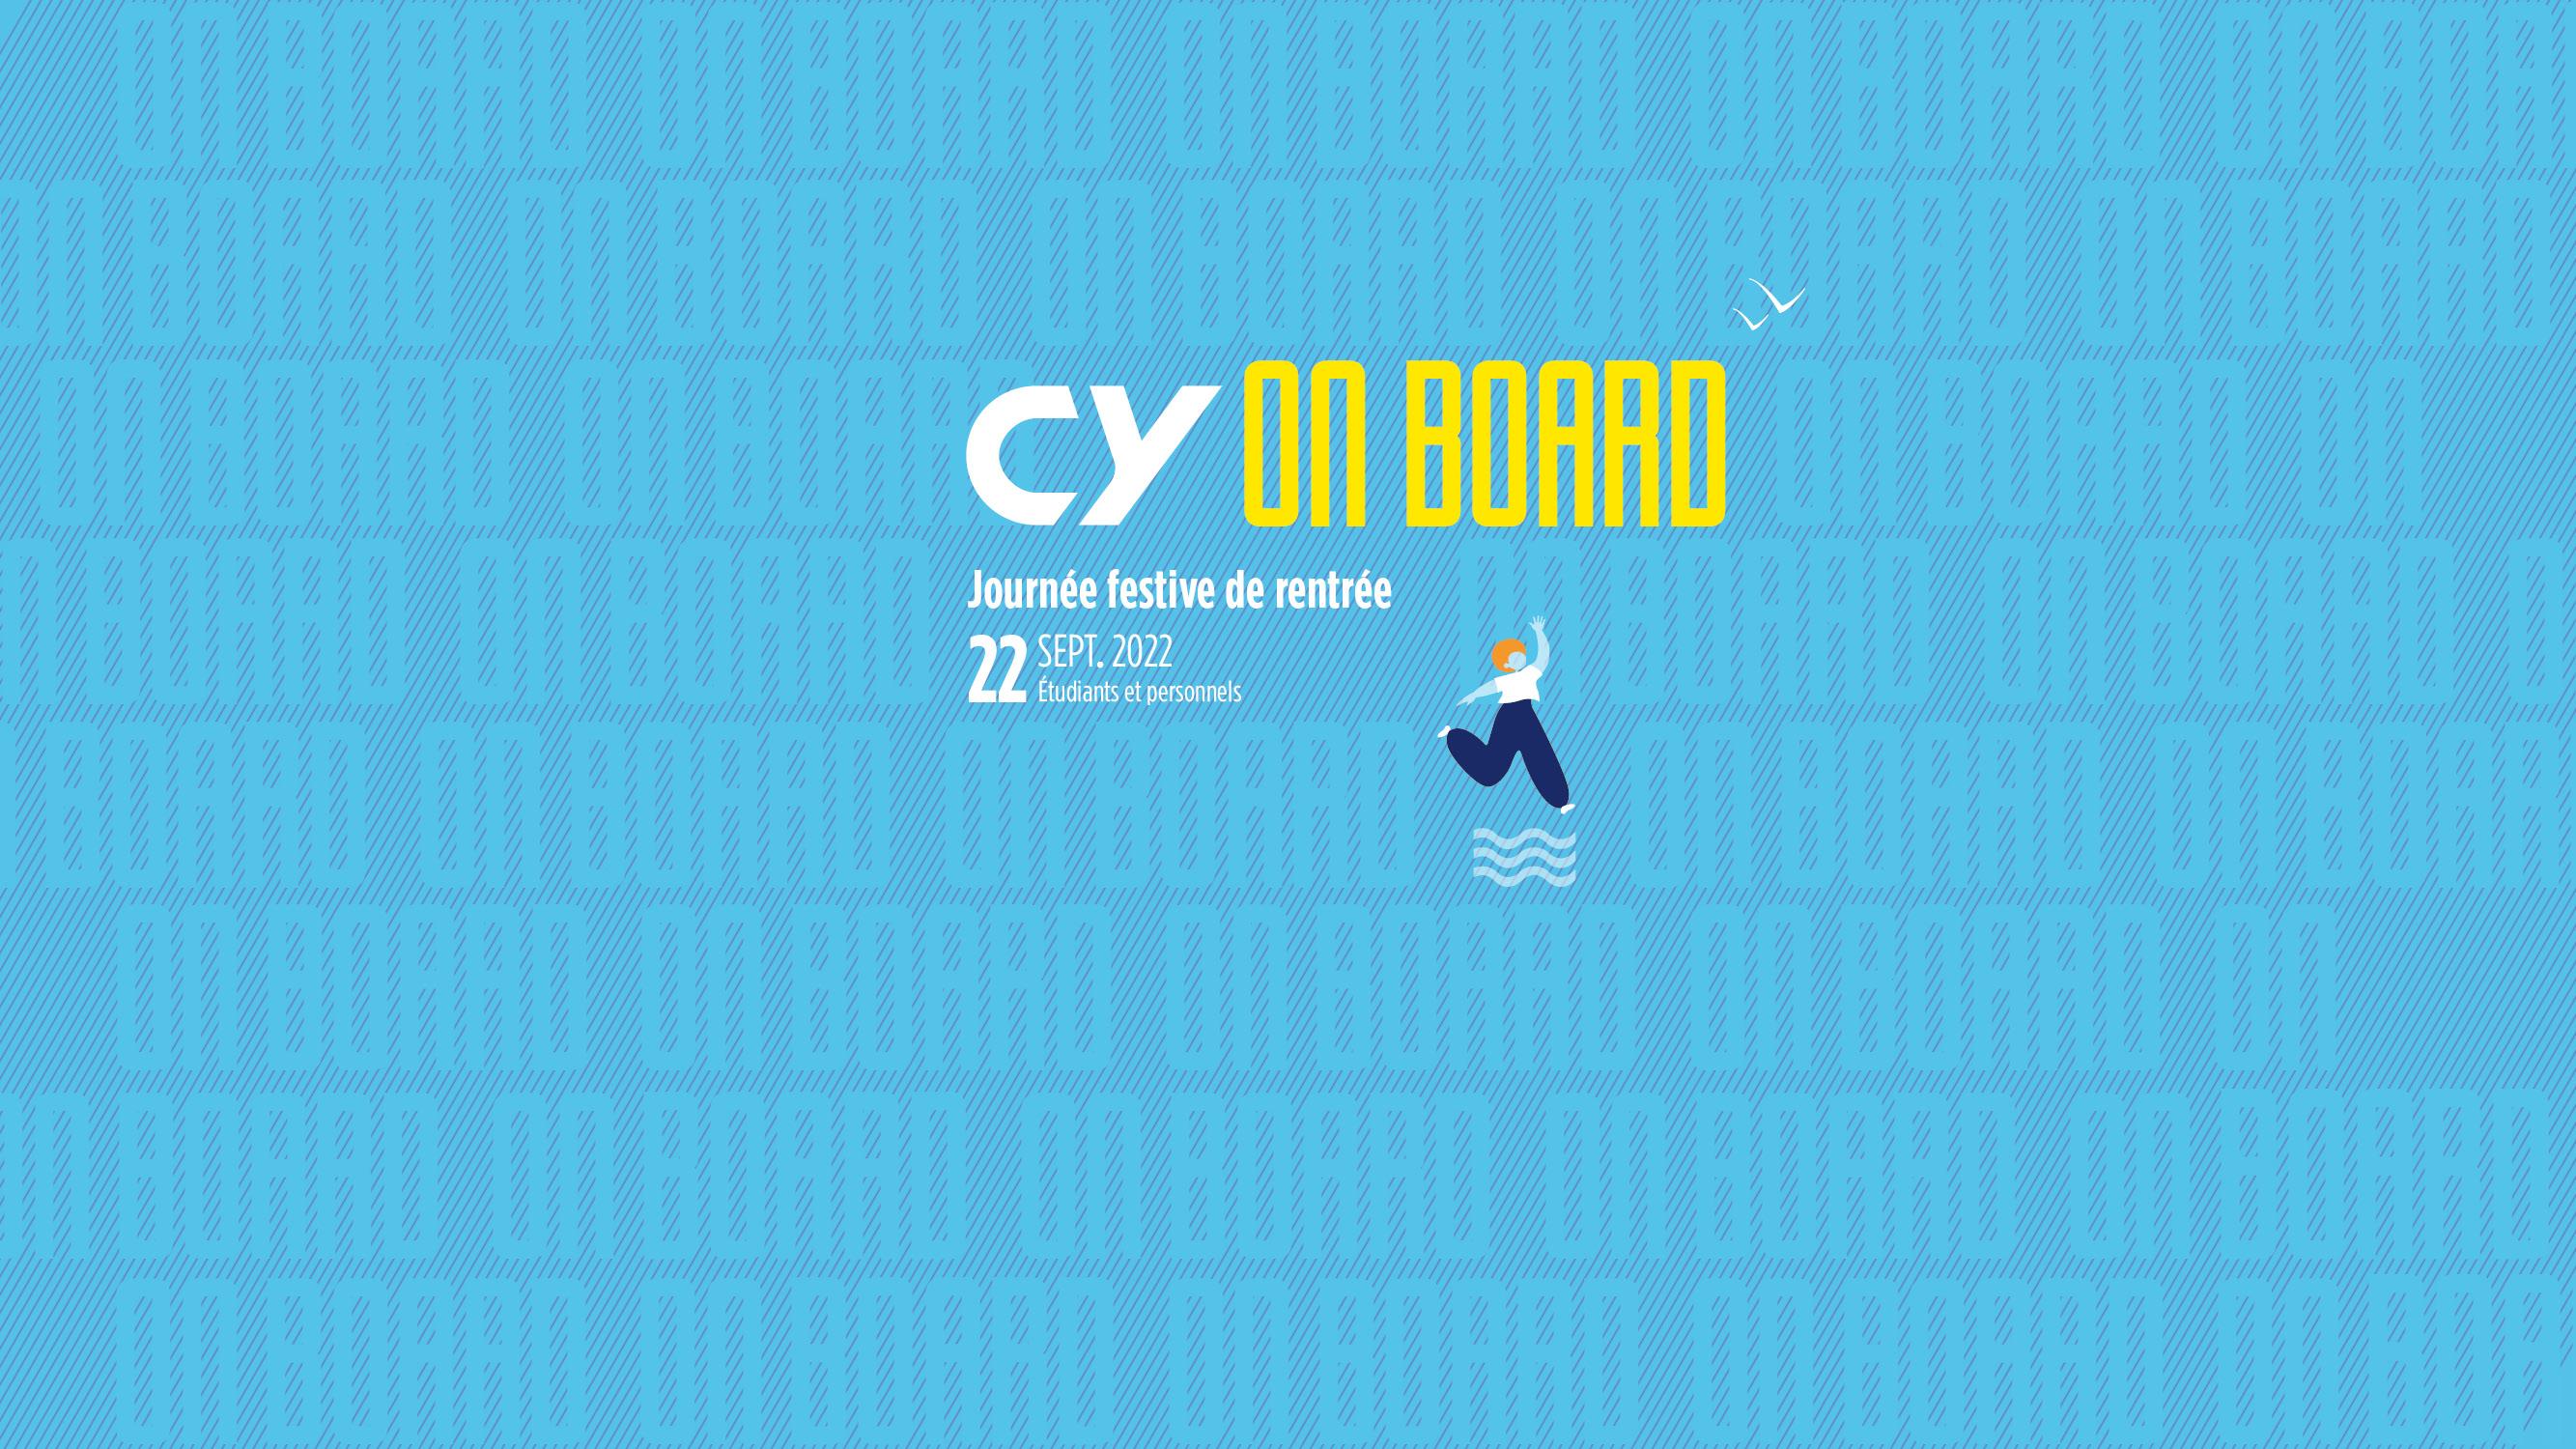 Journée dédiée à la rentrée universitaire : CY On Board